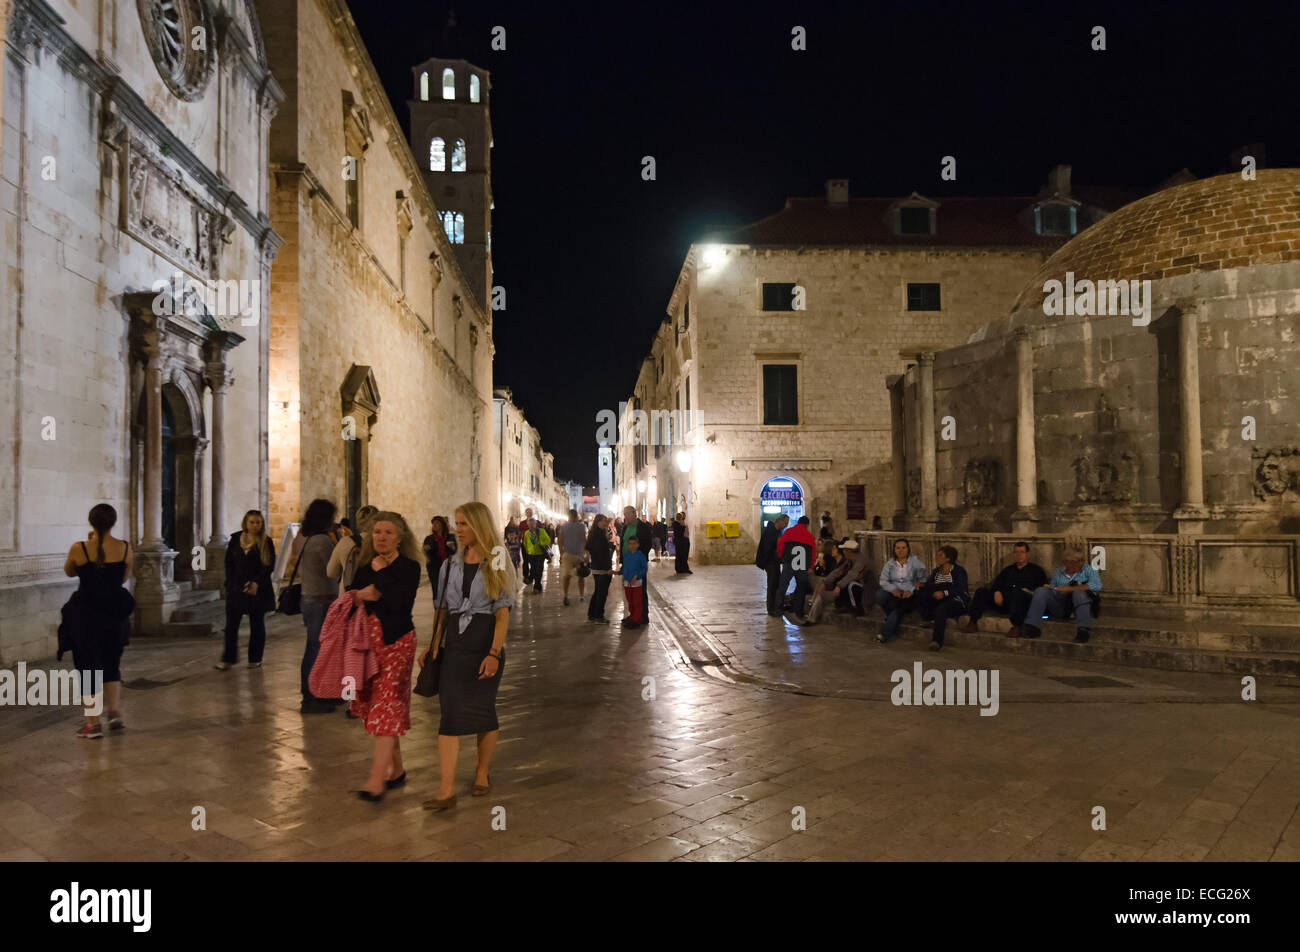 DUBROVNIK, Croatie - 16 MAI 2013 : Les gens visitent la fontaine d'Onofrio dans la vieille ville de Dubrovnik en Croatie. Fountin court est d'Onofrio Banque D'Images